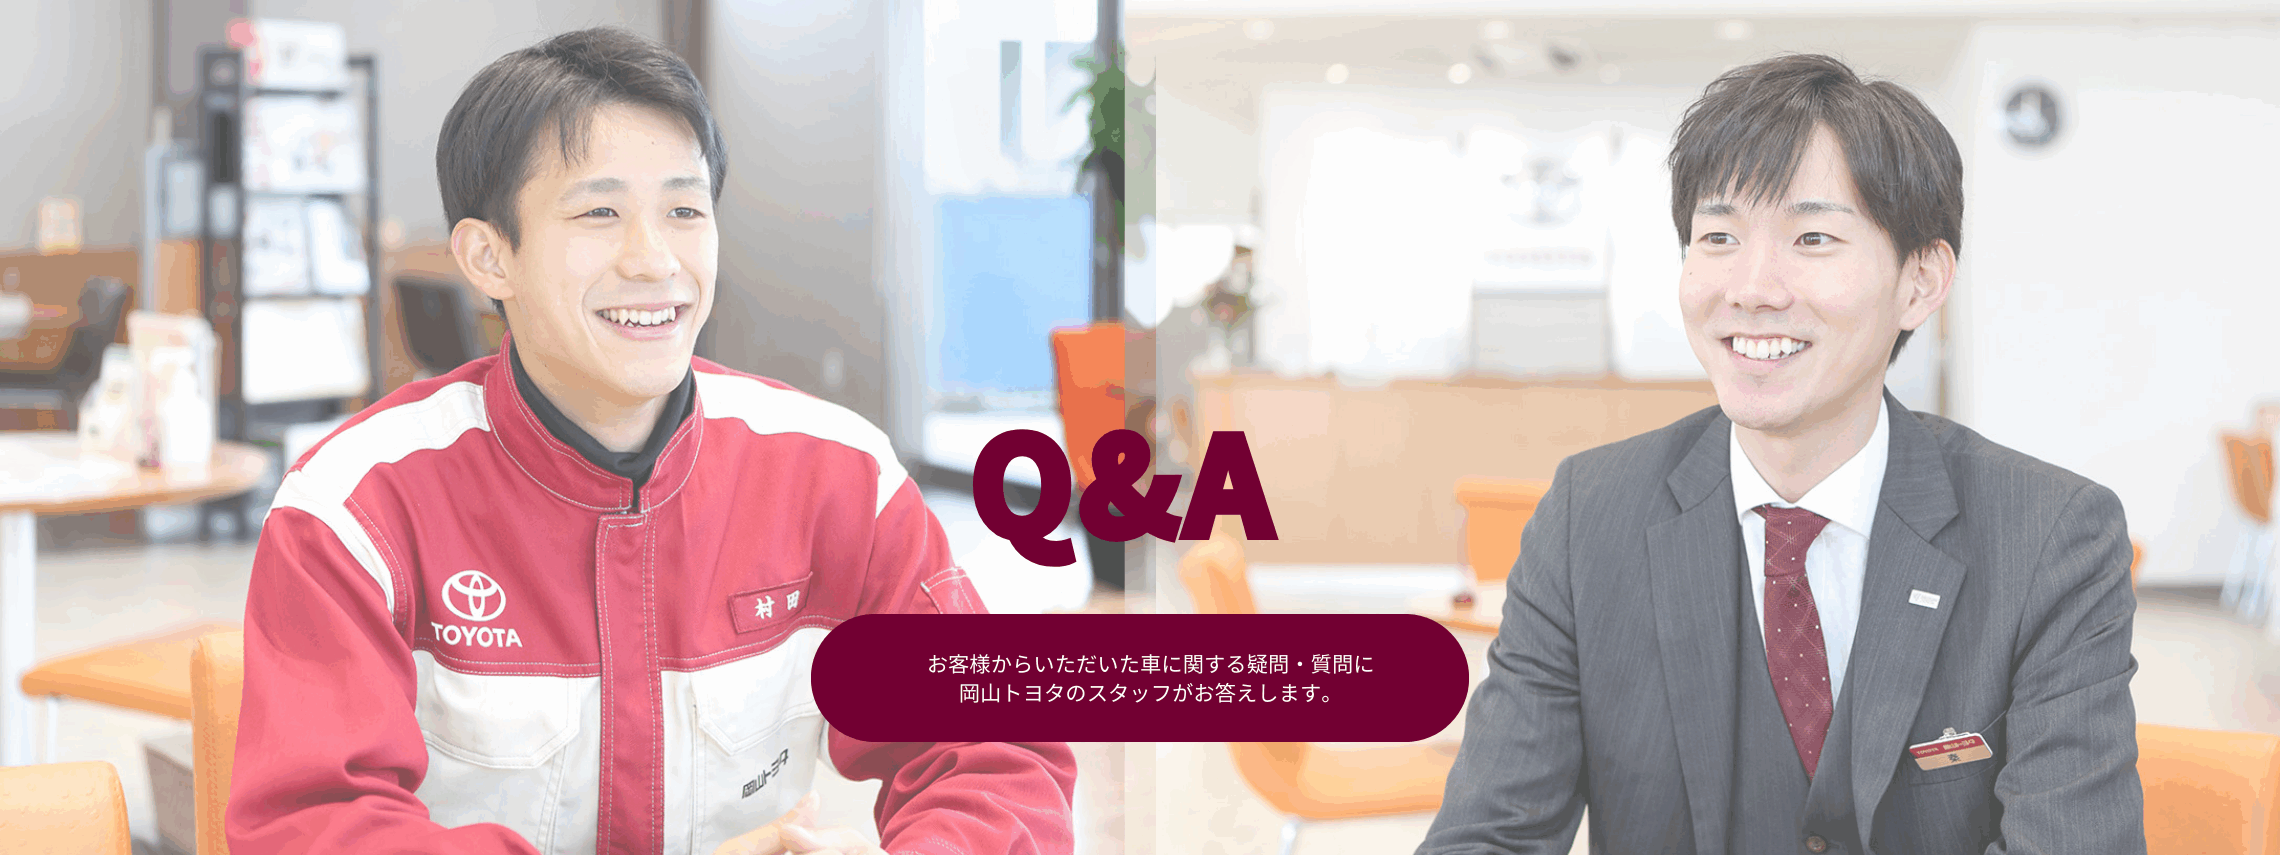 Q&A 車に関する疑問・質問に岡山トヨタのスタッフがお答えします